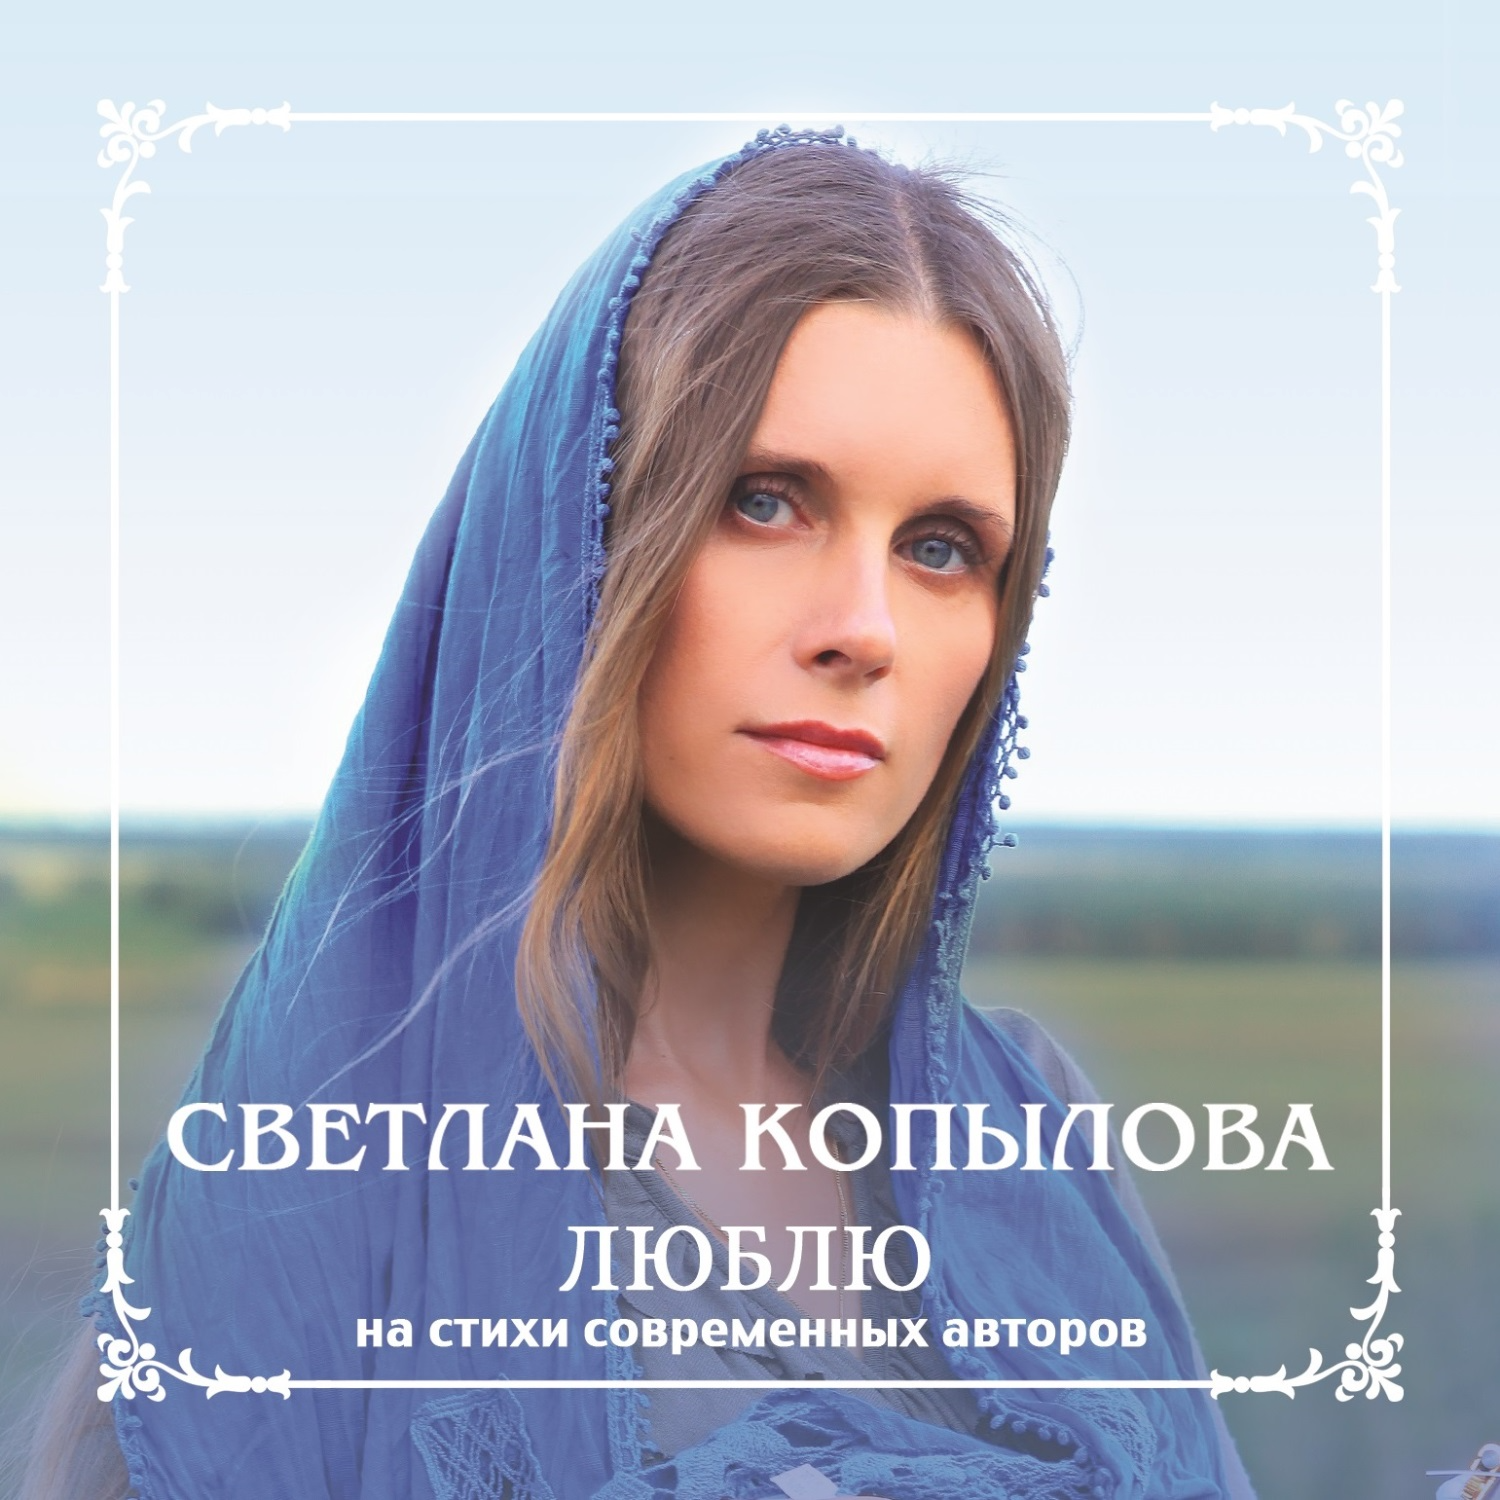 Слушать православные песни подряд